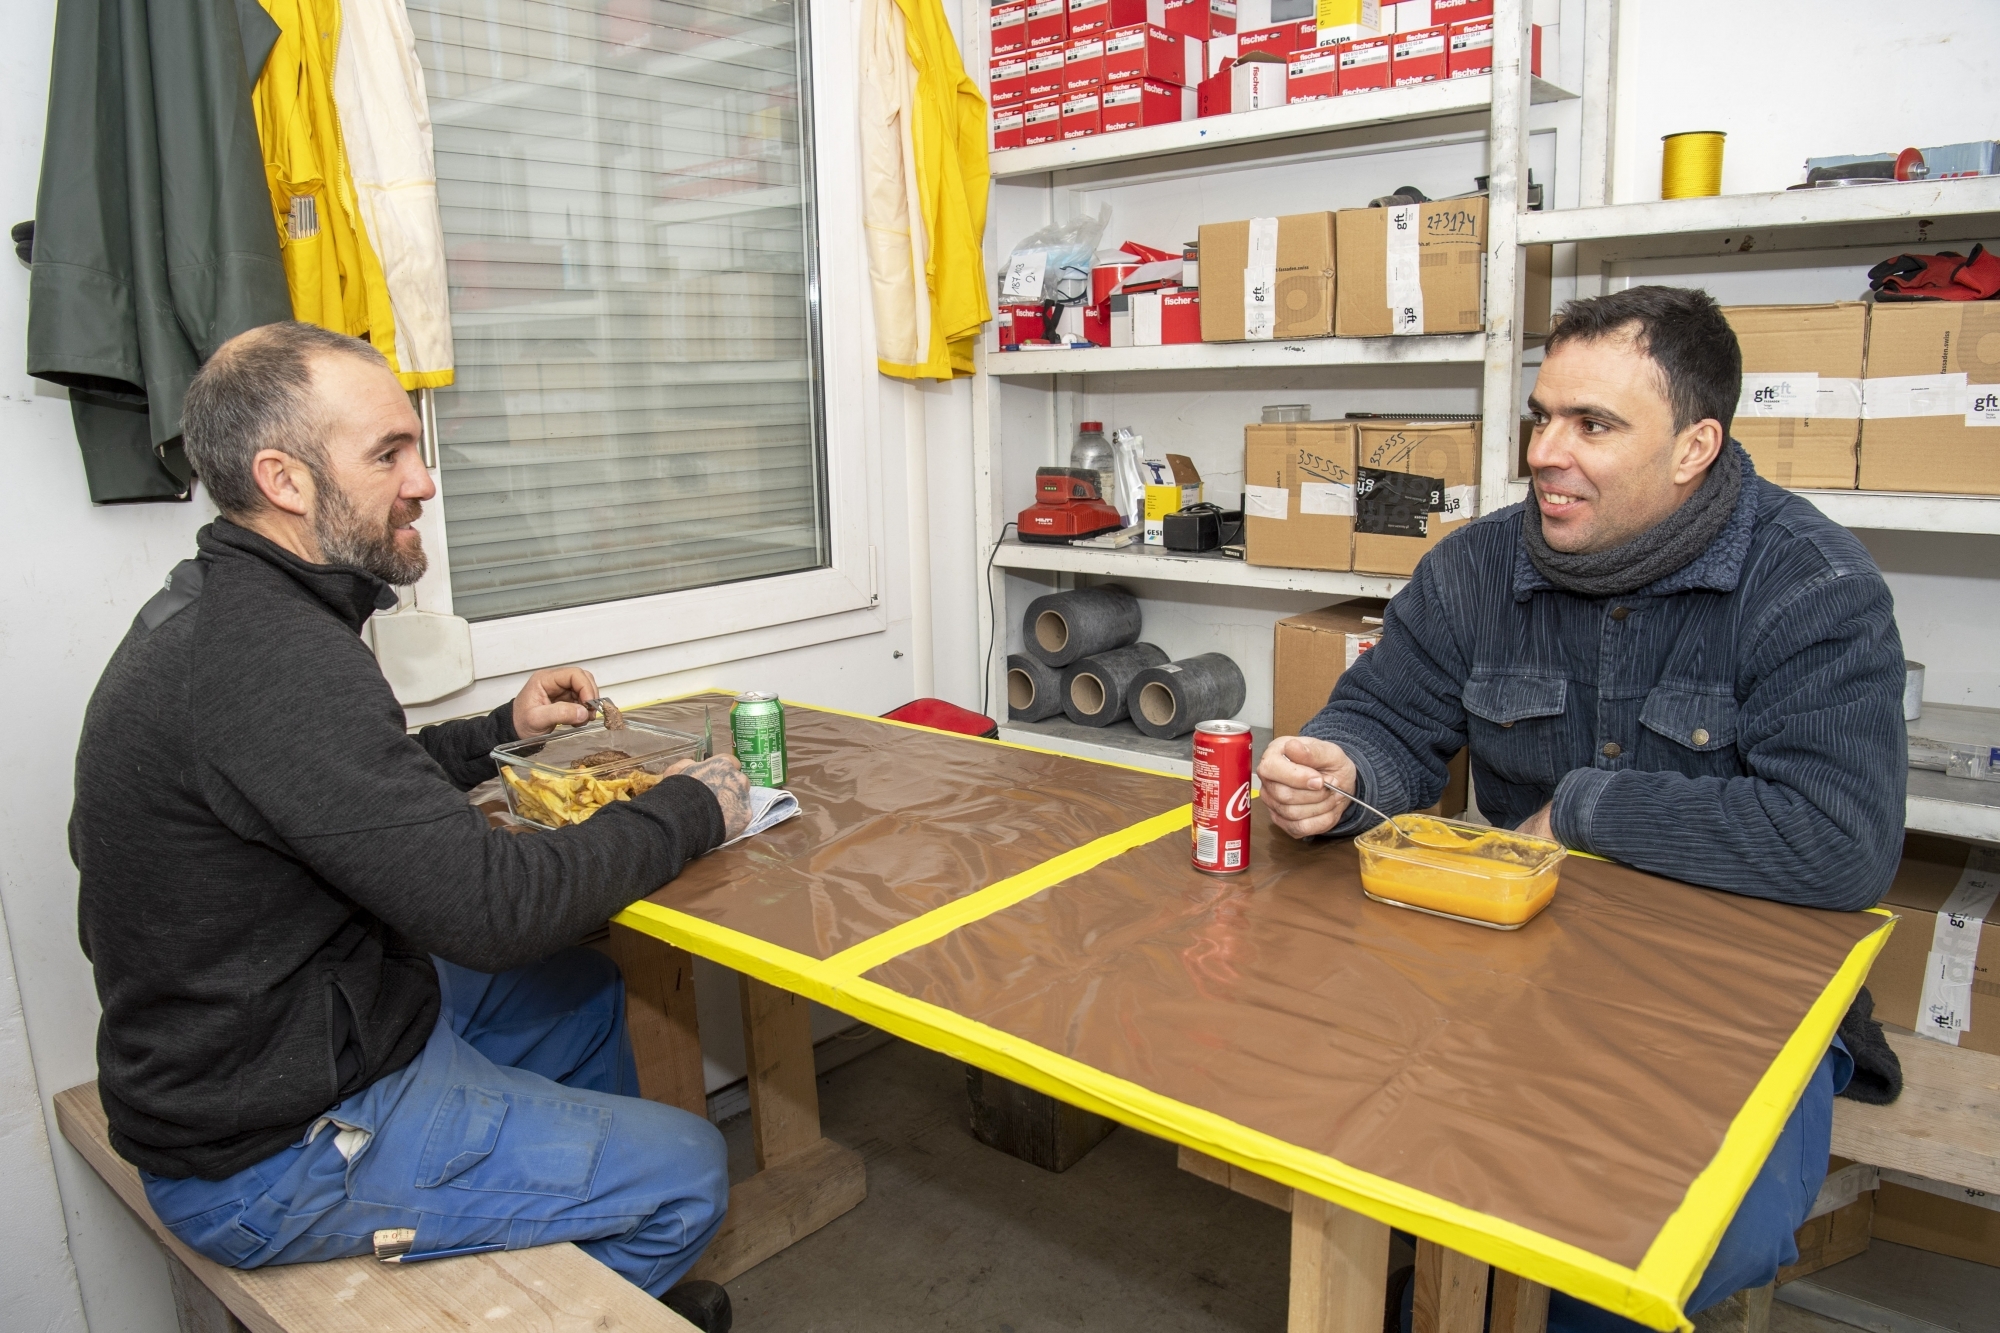 Marco Coelho et José Vieira sont conscients de leur chance d'avoir une cabine à disposition sur leur chantier à Martigny pour leur pause matinale et leur repas de midi.